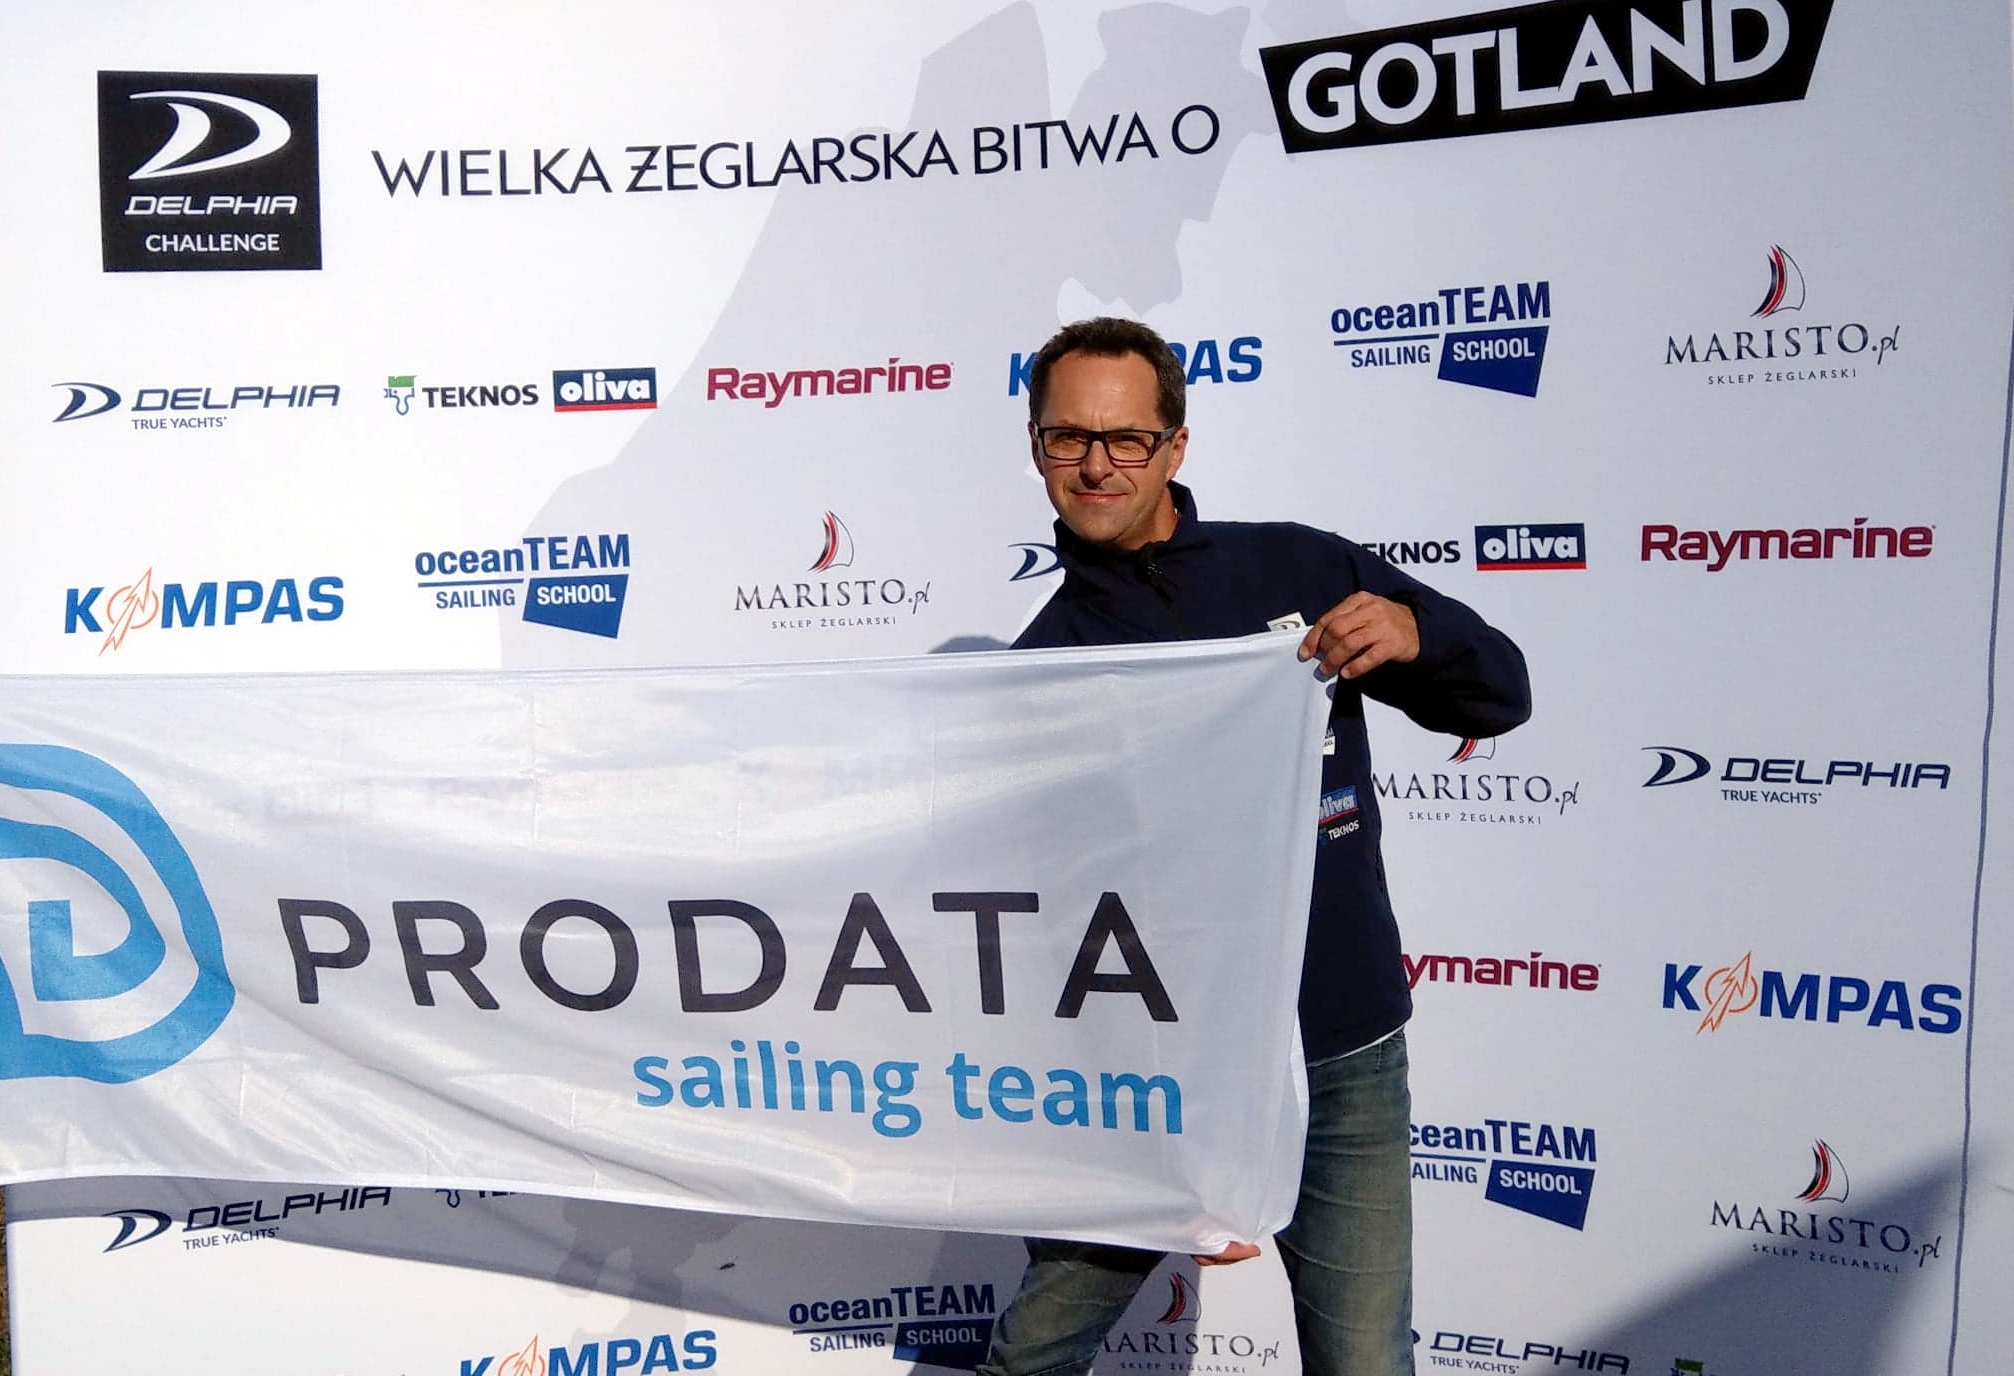 PRODATA Sailing Team Bitwa o Gotland 2018